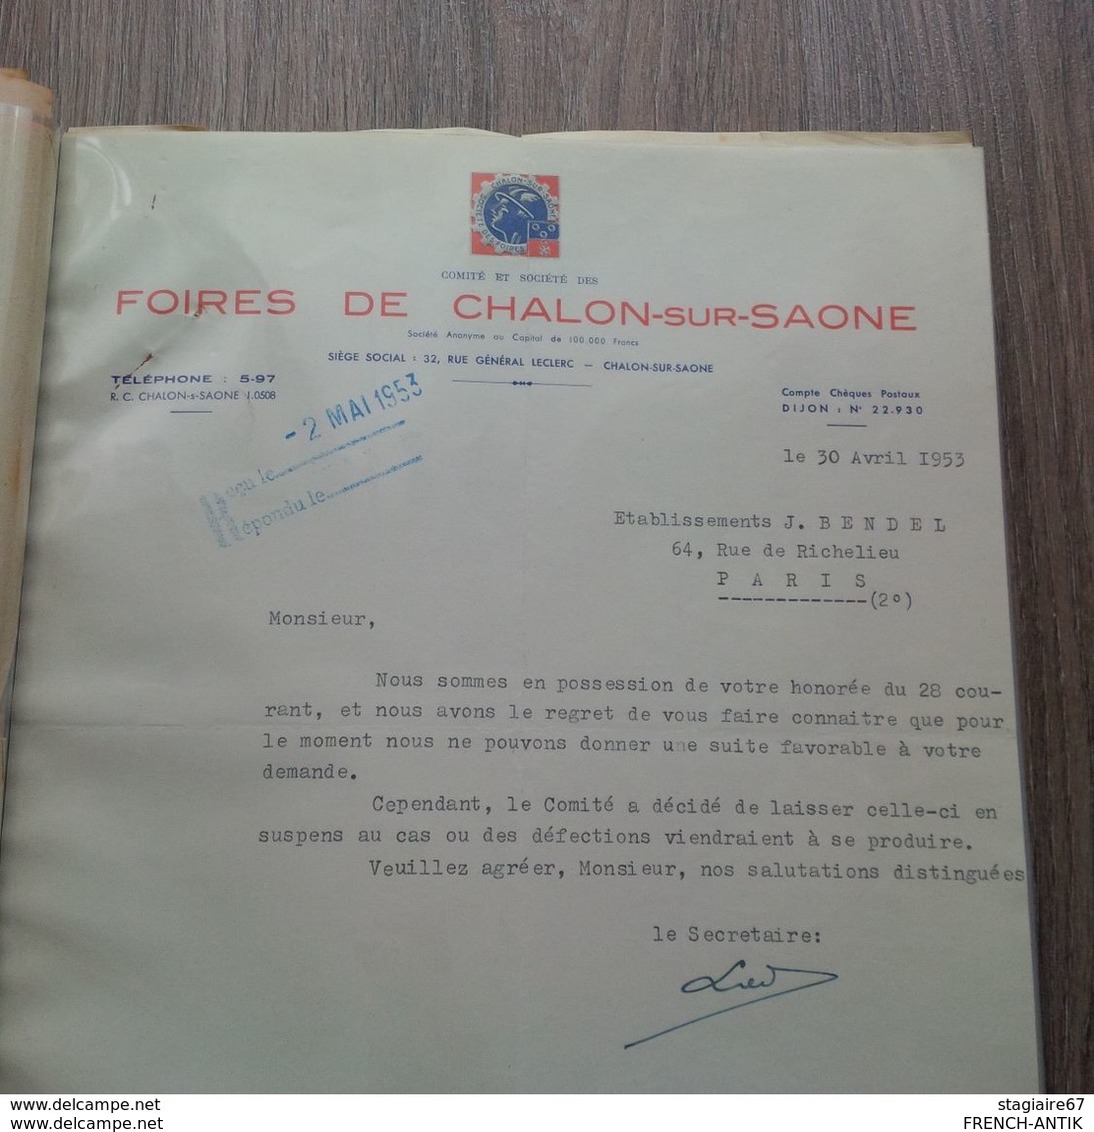 Beau Lot De Document Sur La Vigne Et Le Vin Viniculture Facture Photo Et Divers Documents Fin 1700 A 1950 - Agricoltura